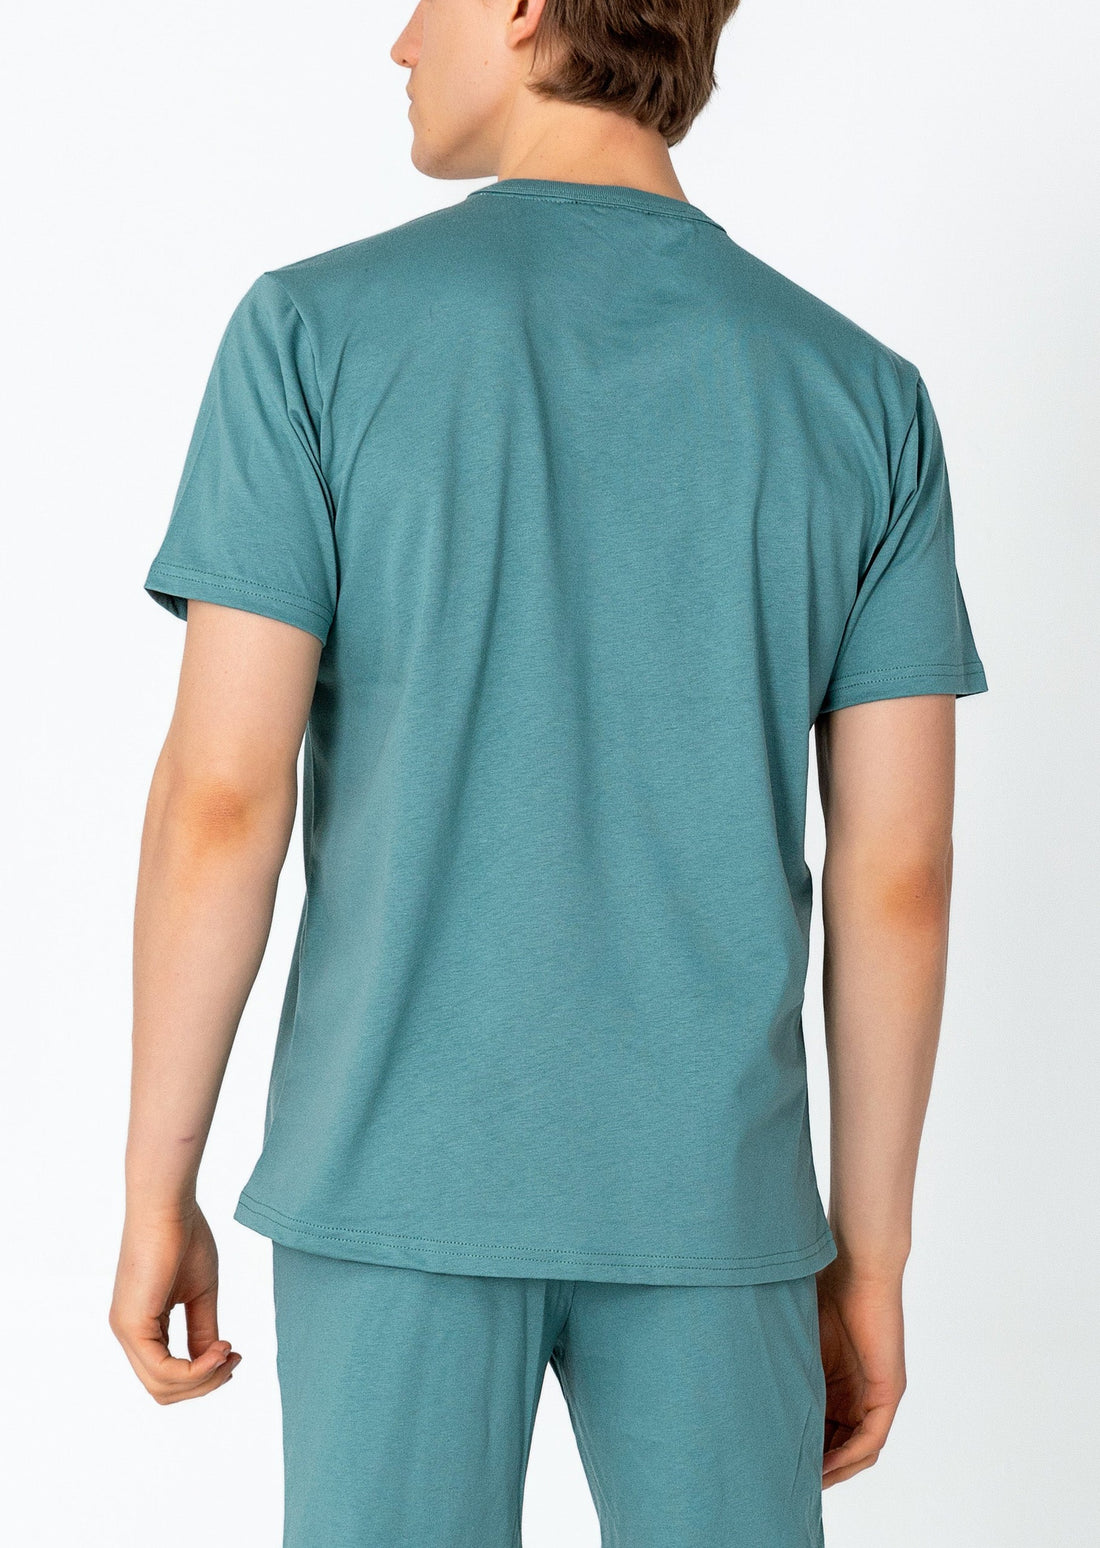 Lightweight Cotton T-shirt - Teal Green